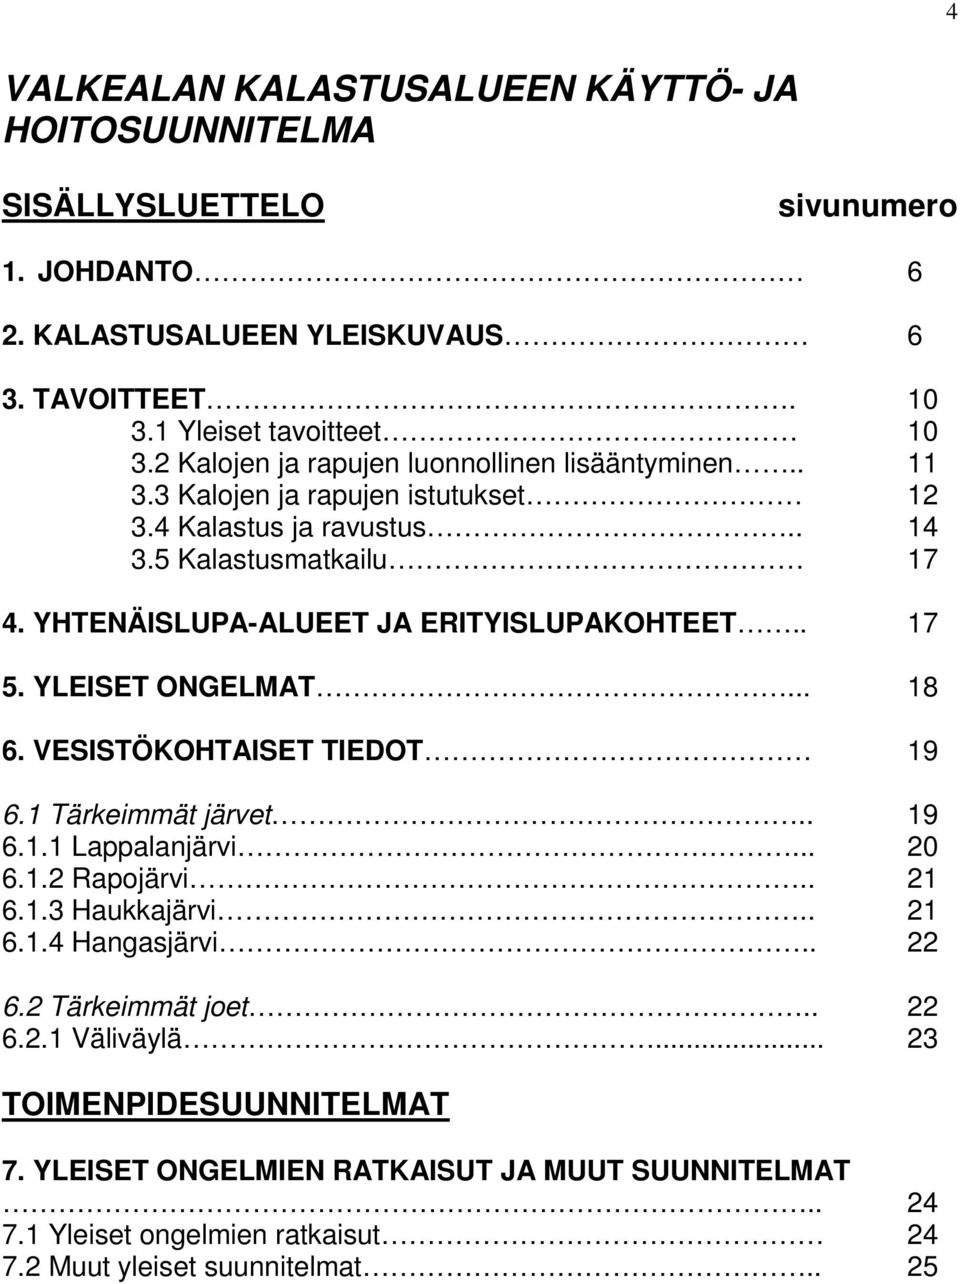 YHTENÄISLUPA-ALUEET JA ERITYISLUPAKOHTEET.. 17 5. YLEISET ONGELMAT... 18 6. VESISTÖKOHTAISET TIEDOT 19 6.1 Tärkeimmät järvet.. 19 6.1.1 Lappalanjärvi... 20 6.1.2 Rapojärvi.. 21 6.1.3 Haukkajärvi.